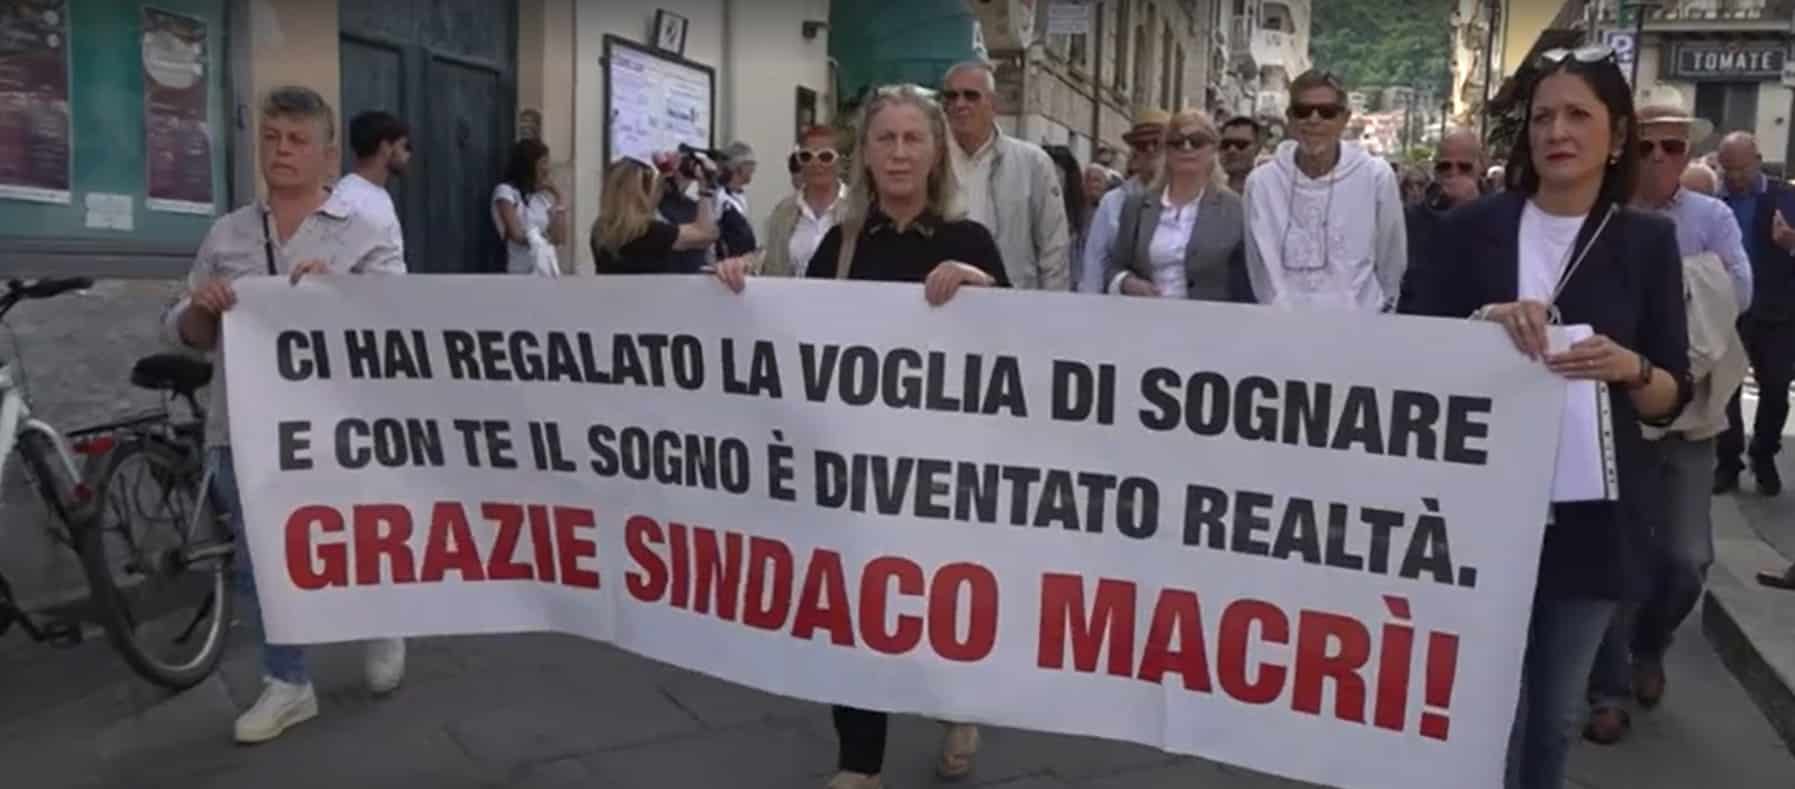 L’incredibile relazione sui legami tra il sindaco di Tropea, Macrì, e la ‘Ndrangheta